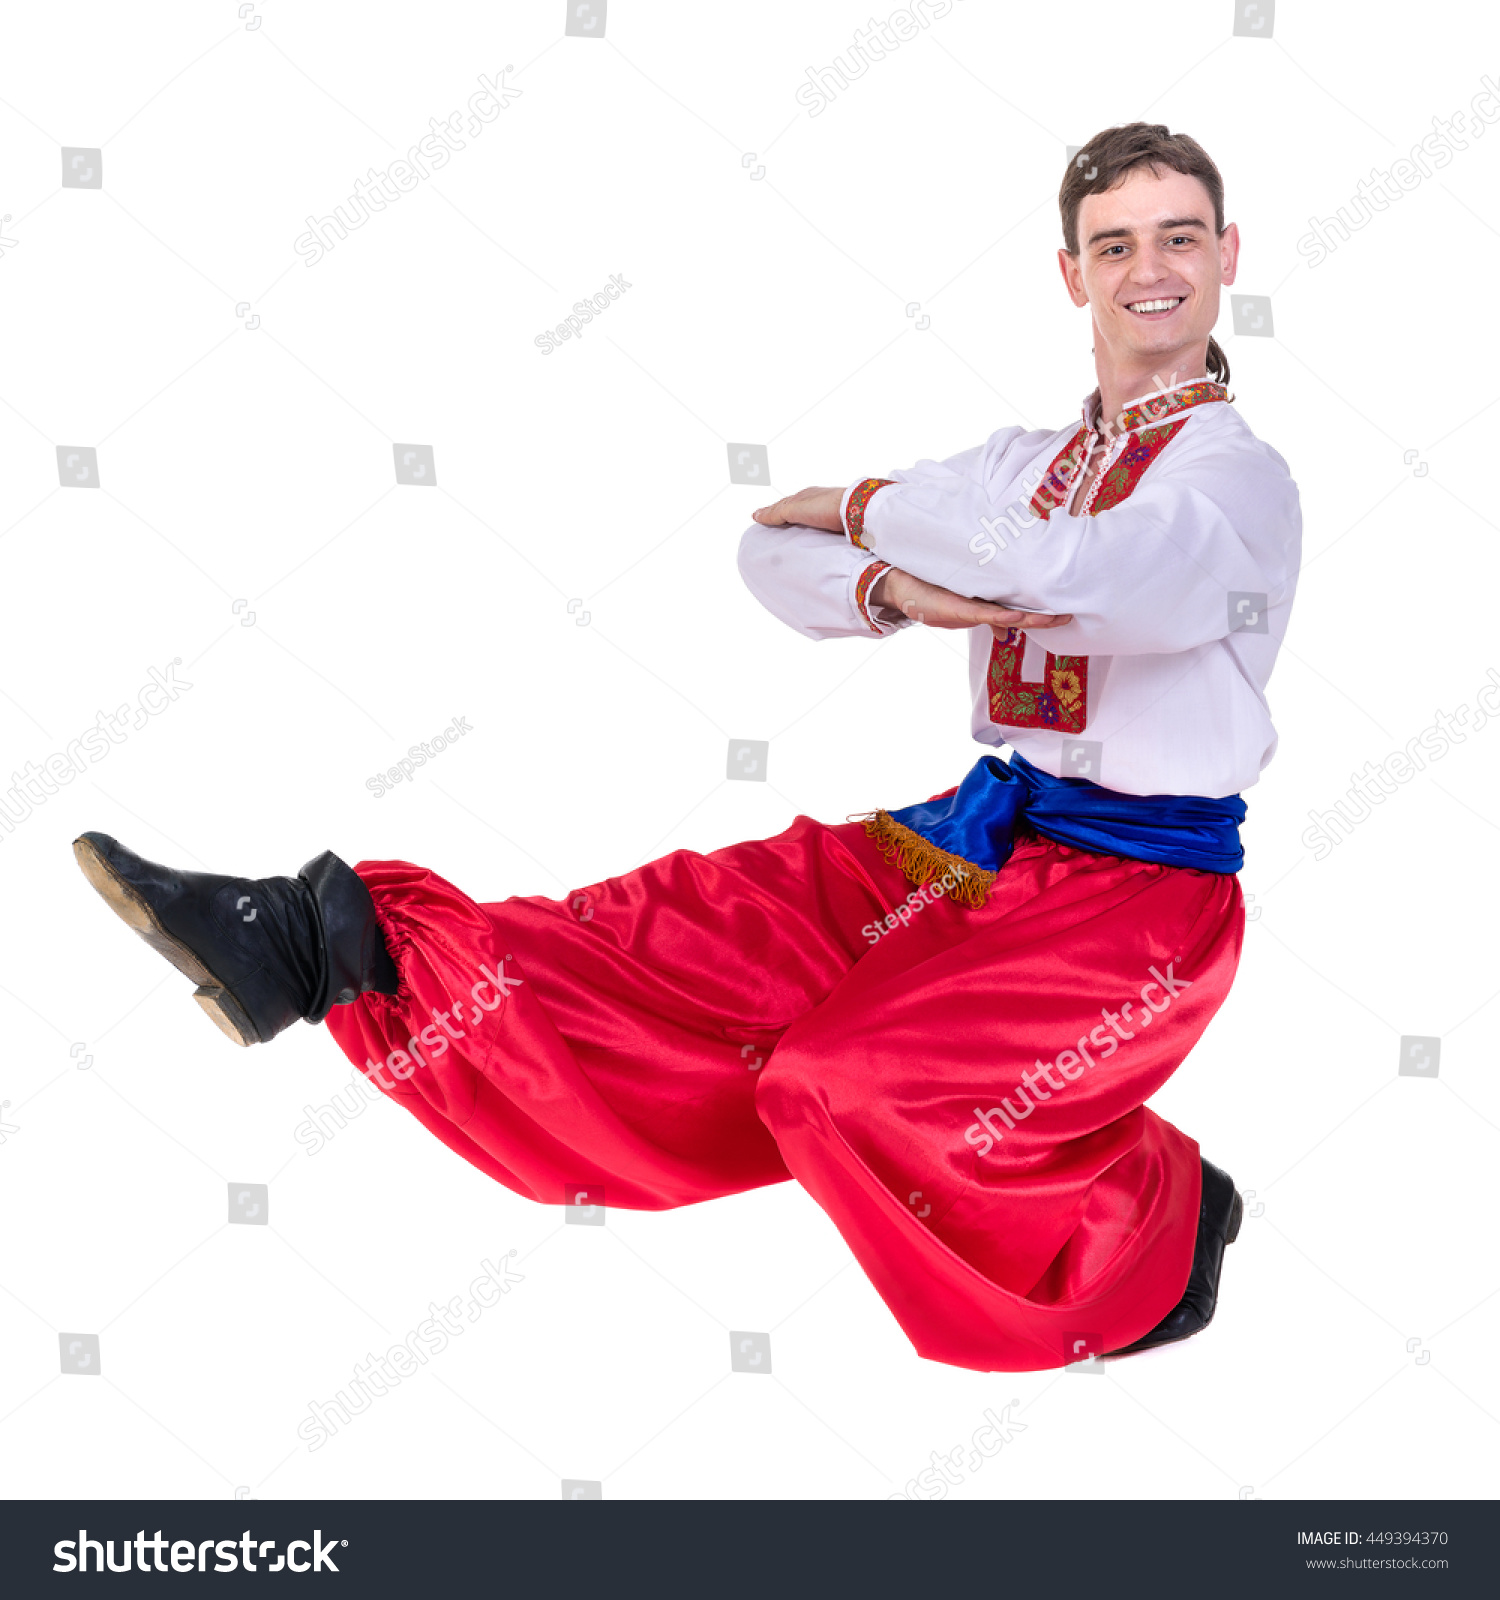 Русские мужики танцуют